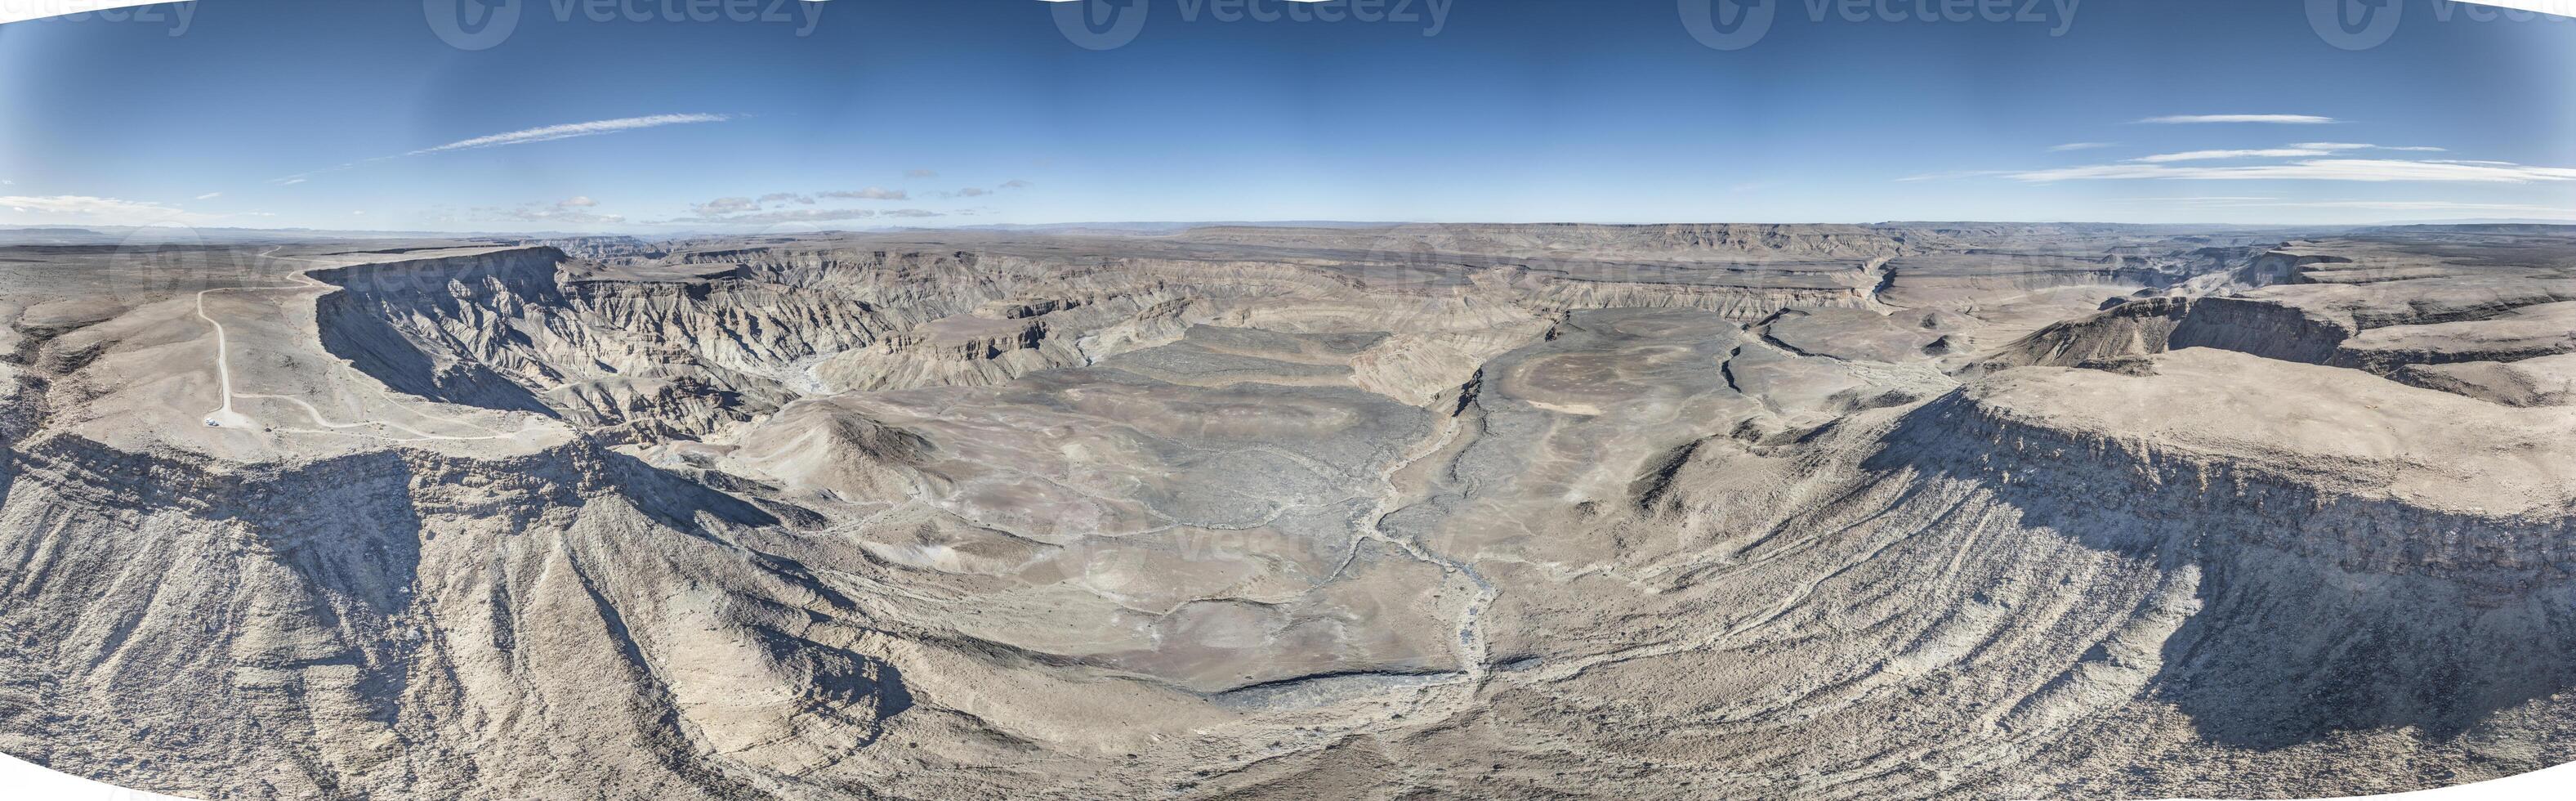 panoramique drone image de le poisson rivière canyon dans Namibie pris de le plus haut bord de le Sud côté photo